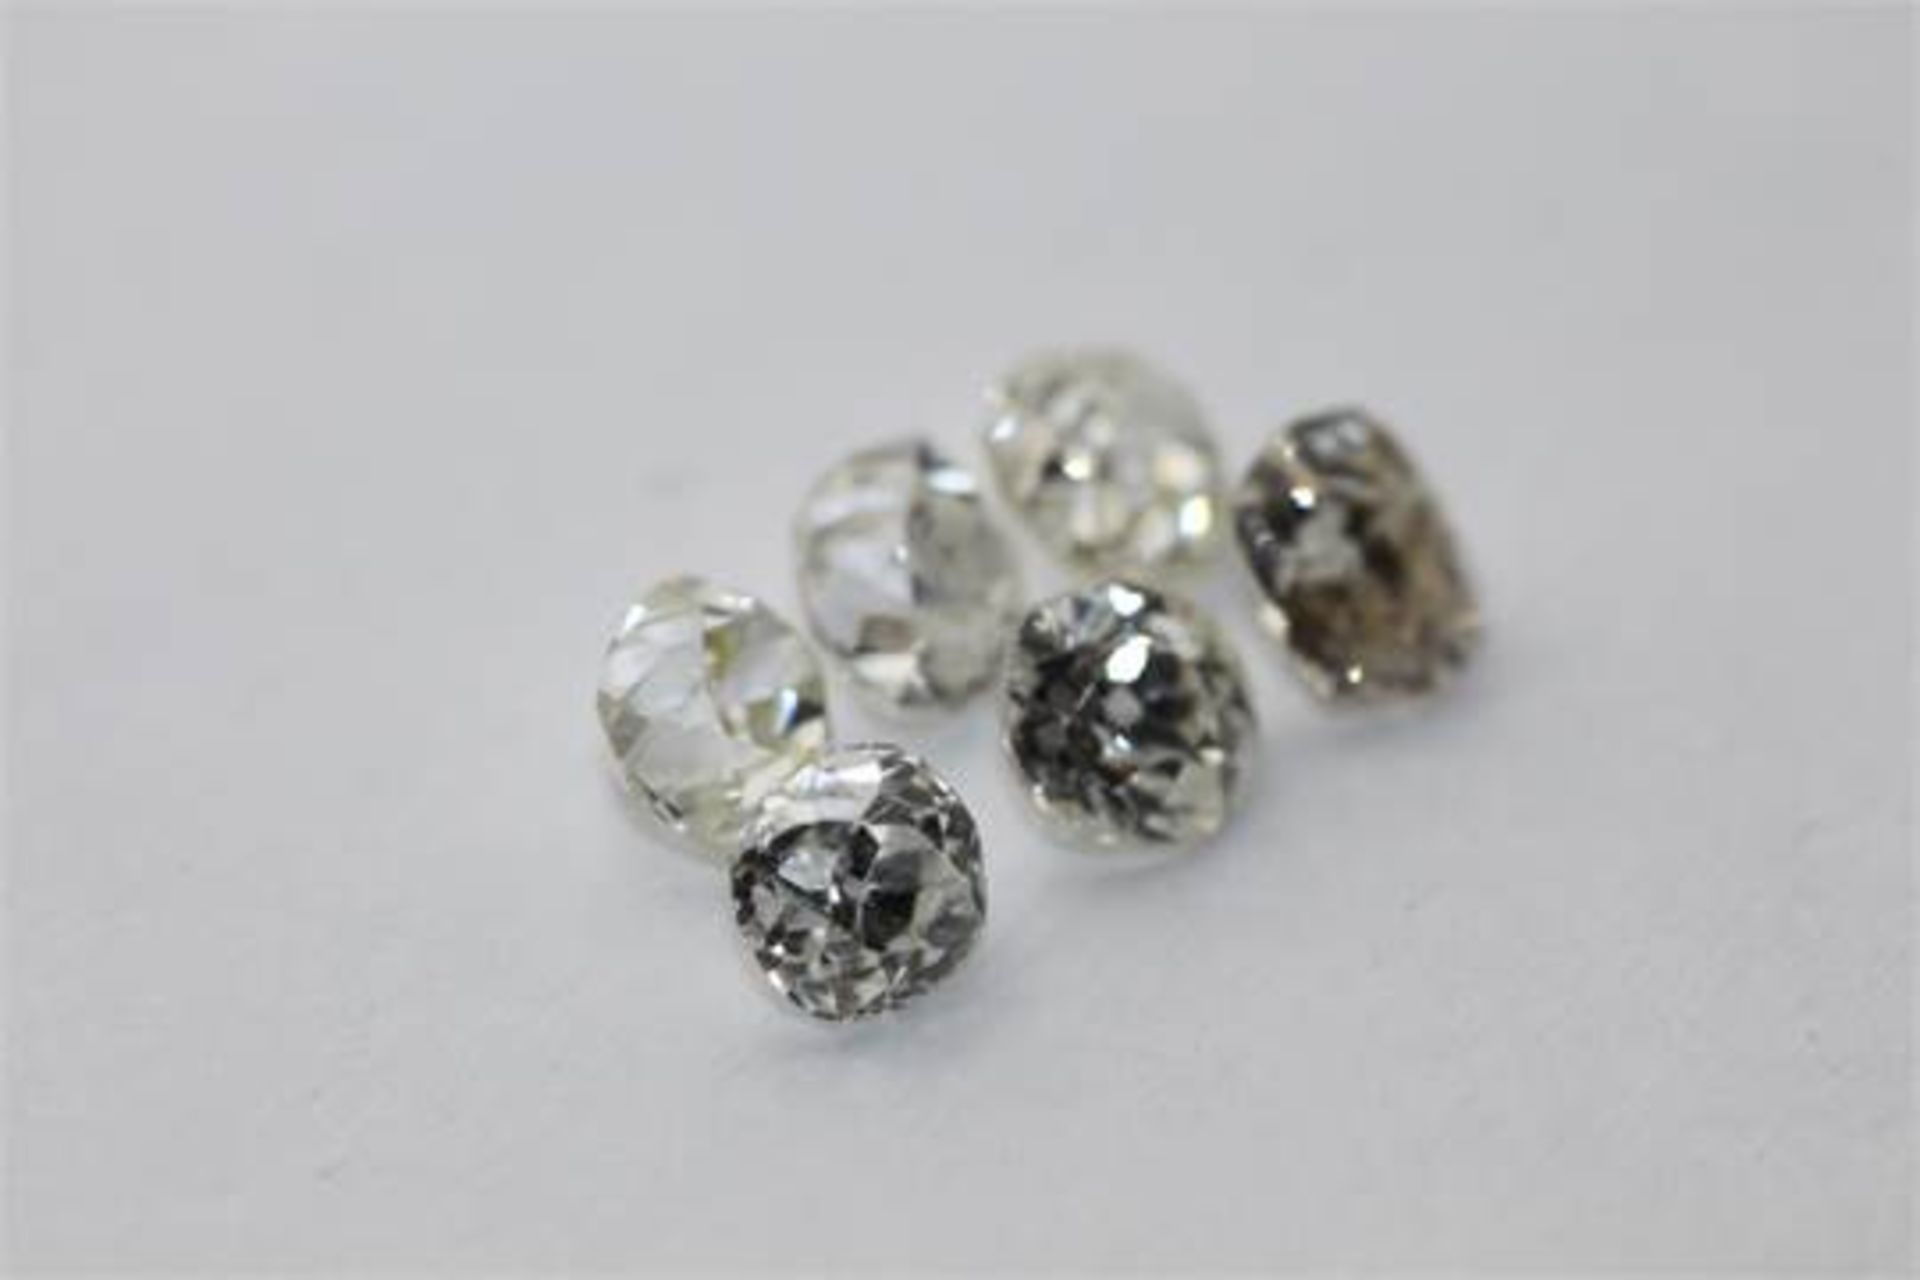 6 x Old cut Diamonds = 2.78ct,  Colour range D - J,  clarity VS - Image 3 of 3